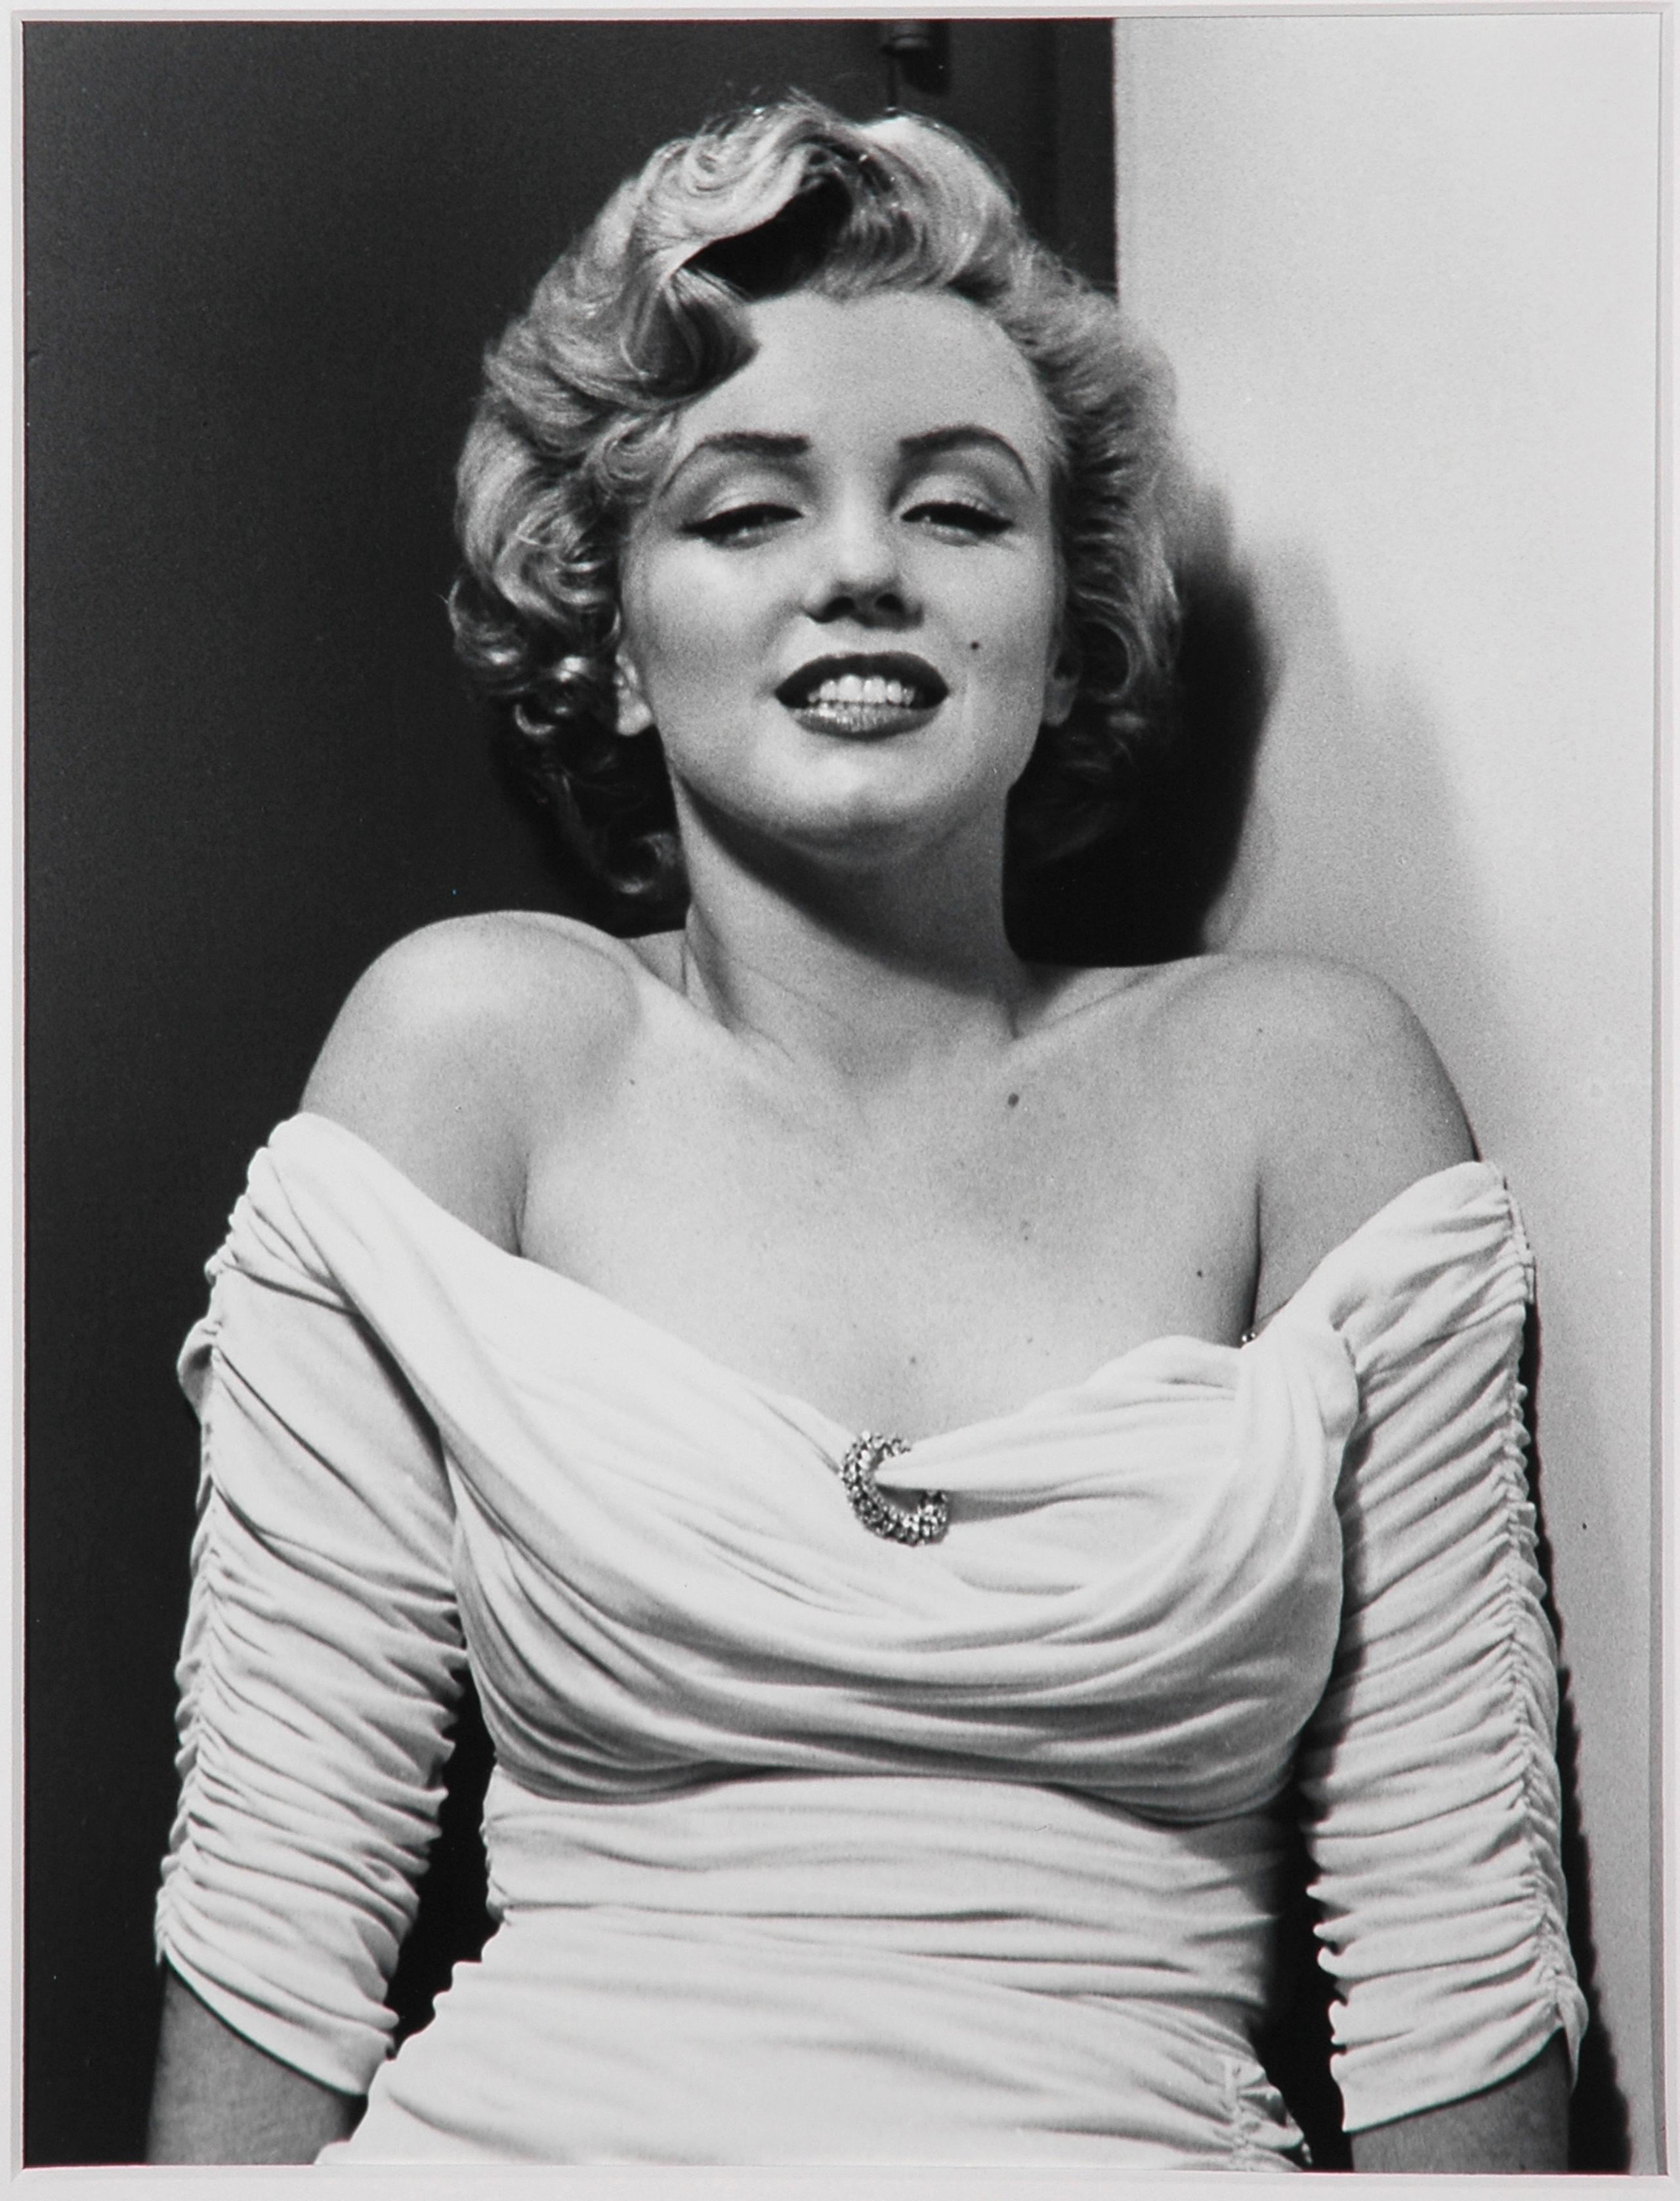 Foto de Marilyn Monroe tomada por Philippe Halsman en 1952 para la portada de la revista Life.